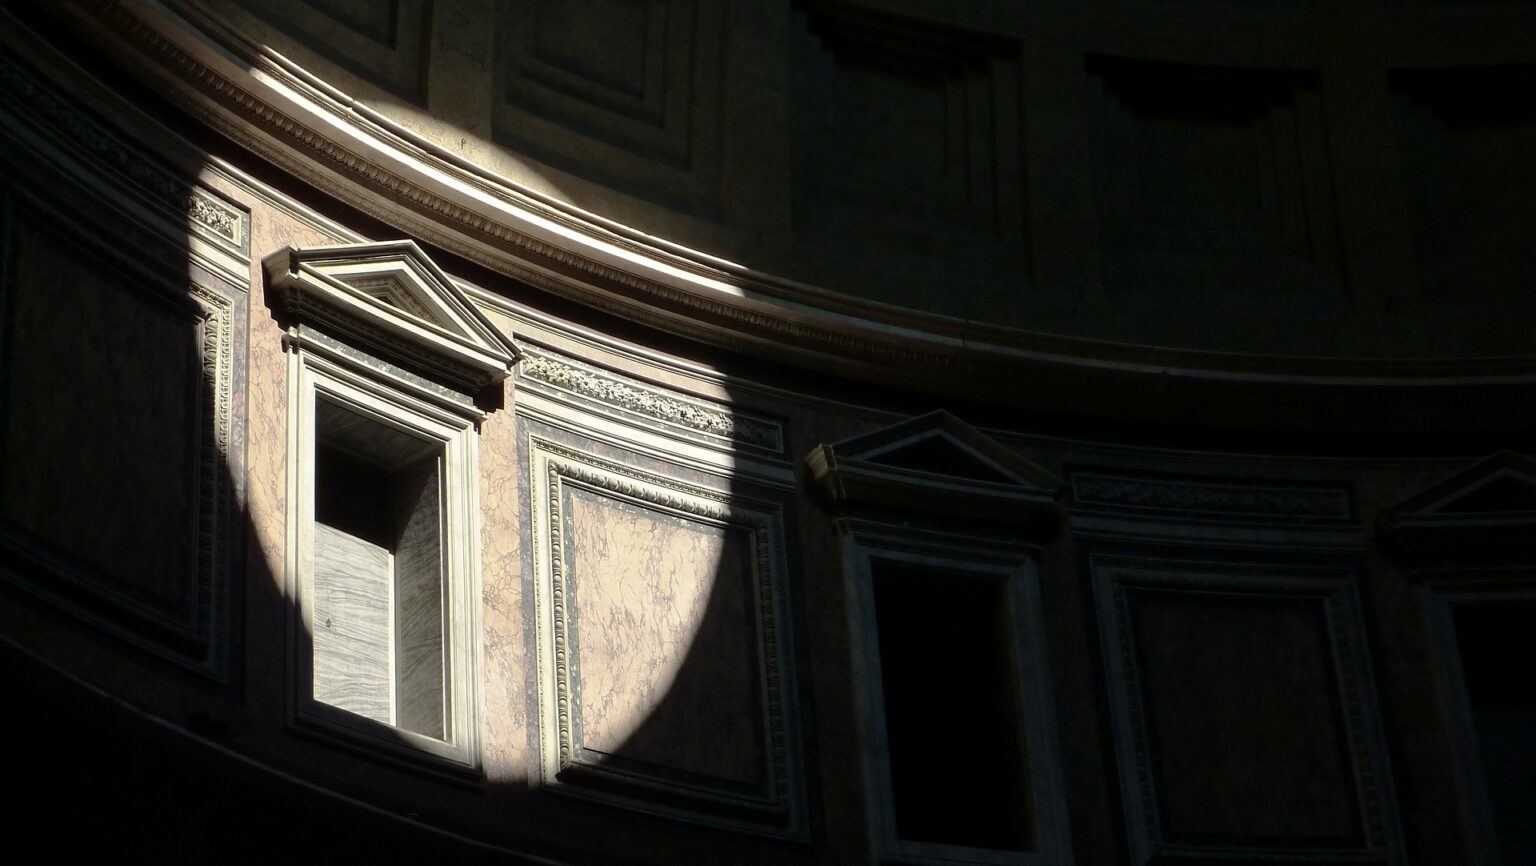 Un dettaglio tra luci e ombre del Pantheon a Roma